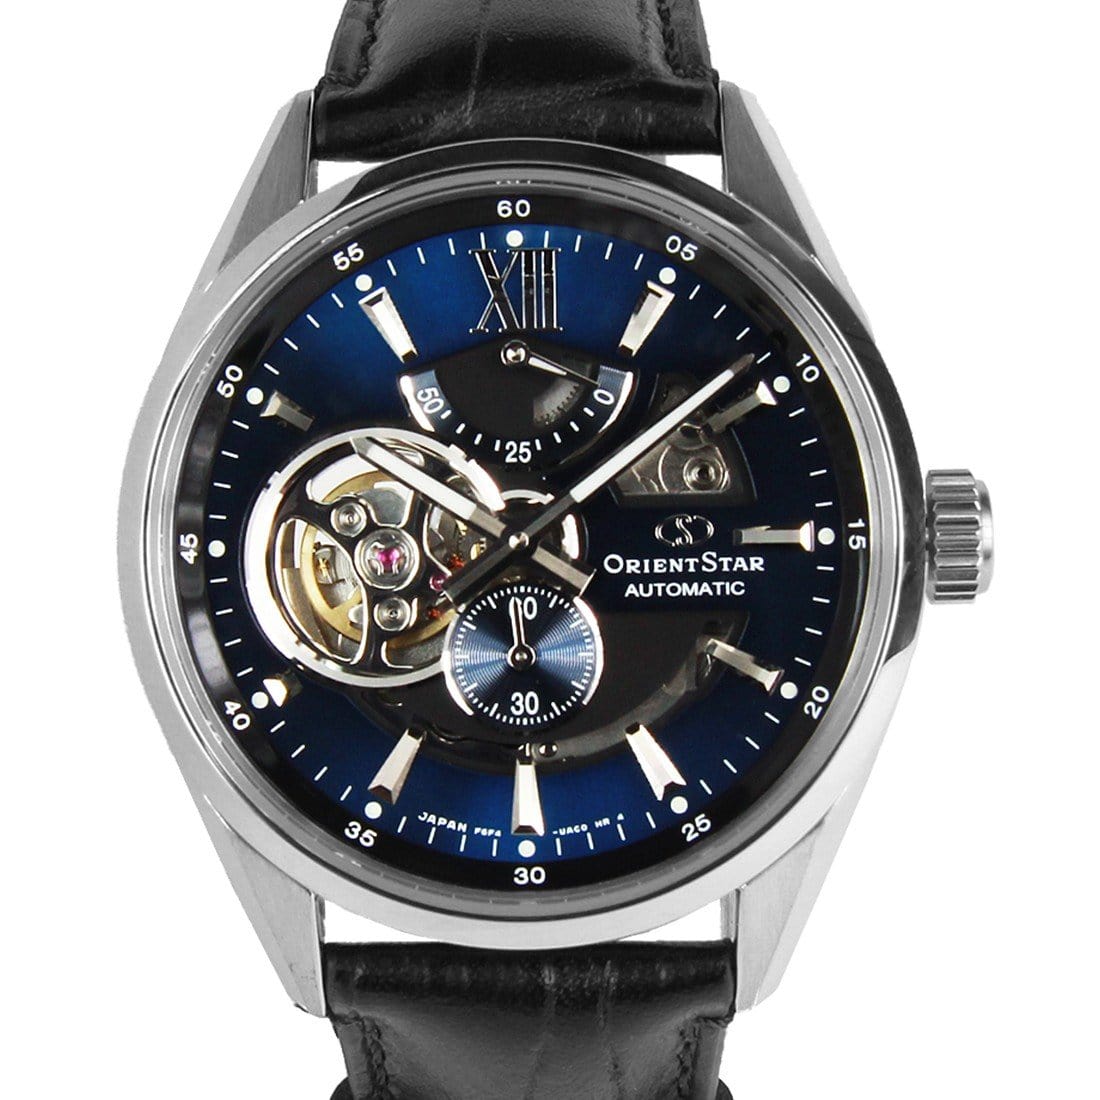 Orient Star Automatic Mens Watch RE-AV0005L00B